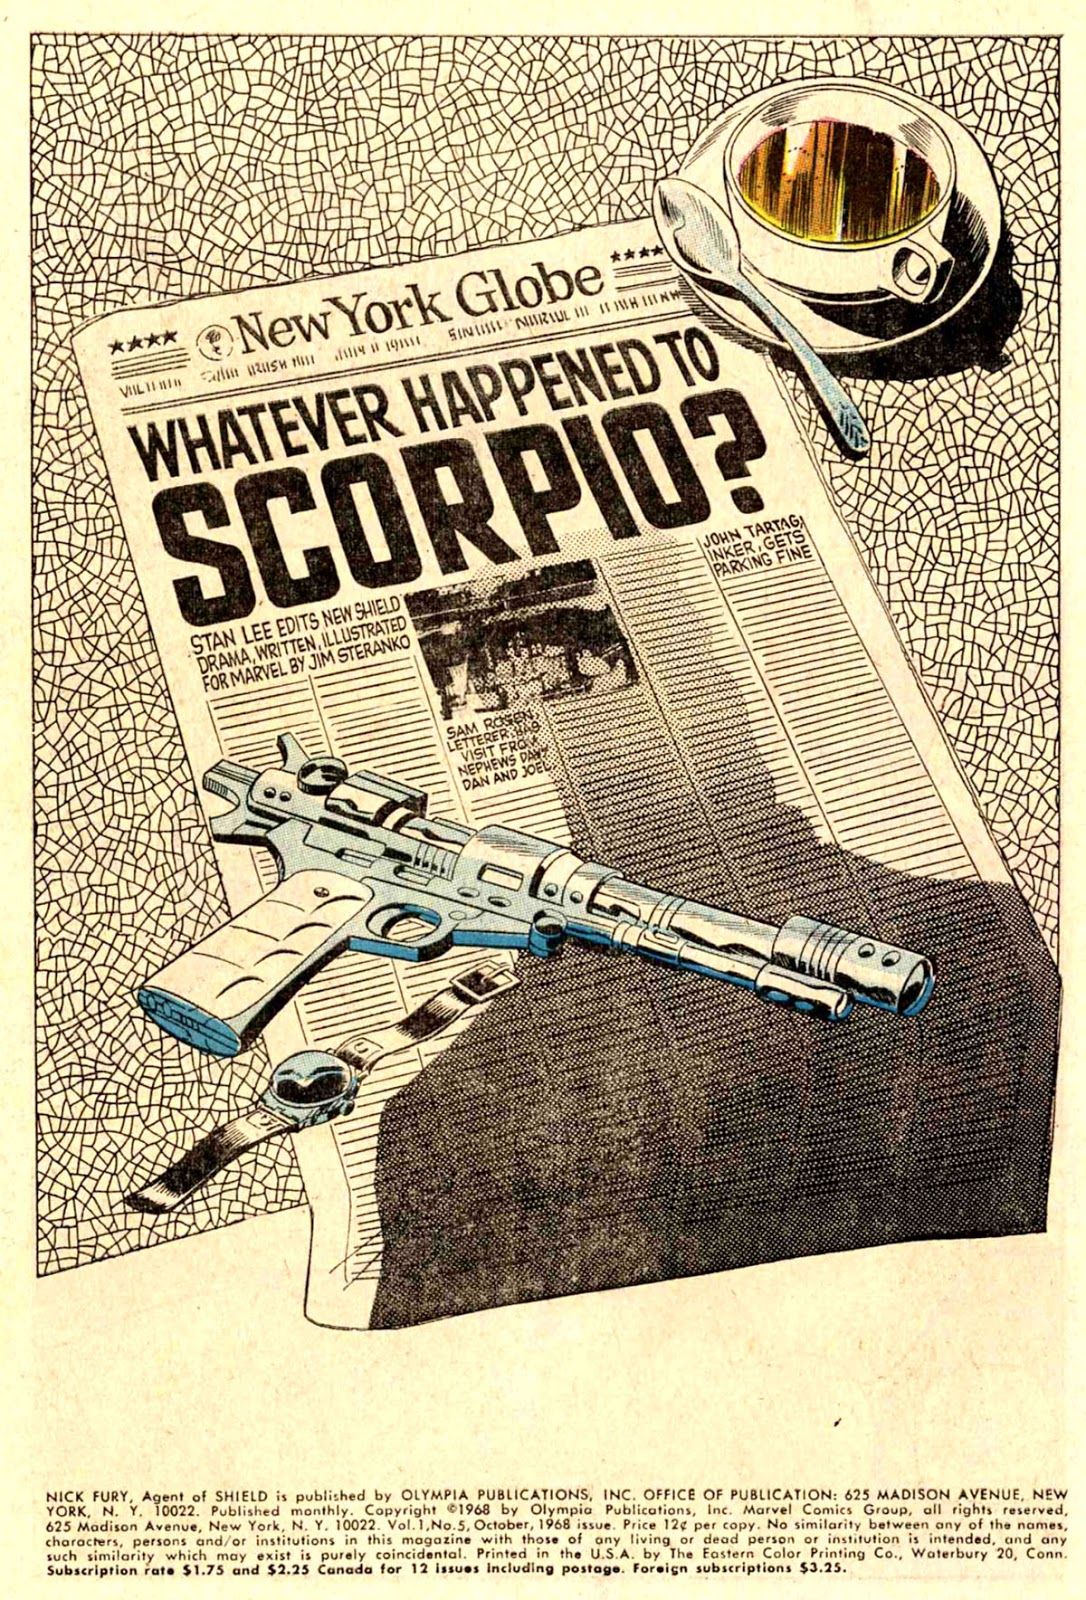 Un journal demande ce qui est arrivé au Scorpion